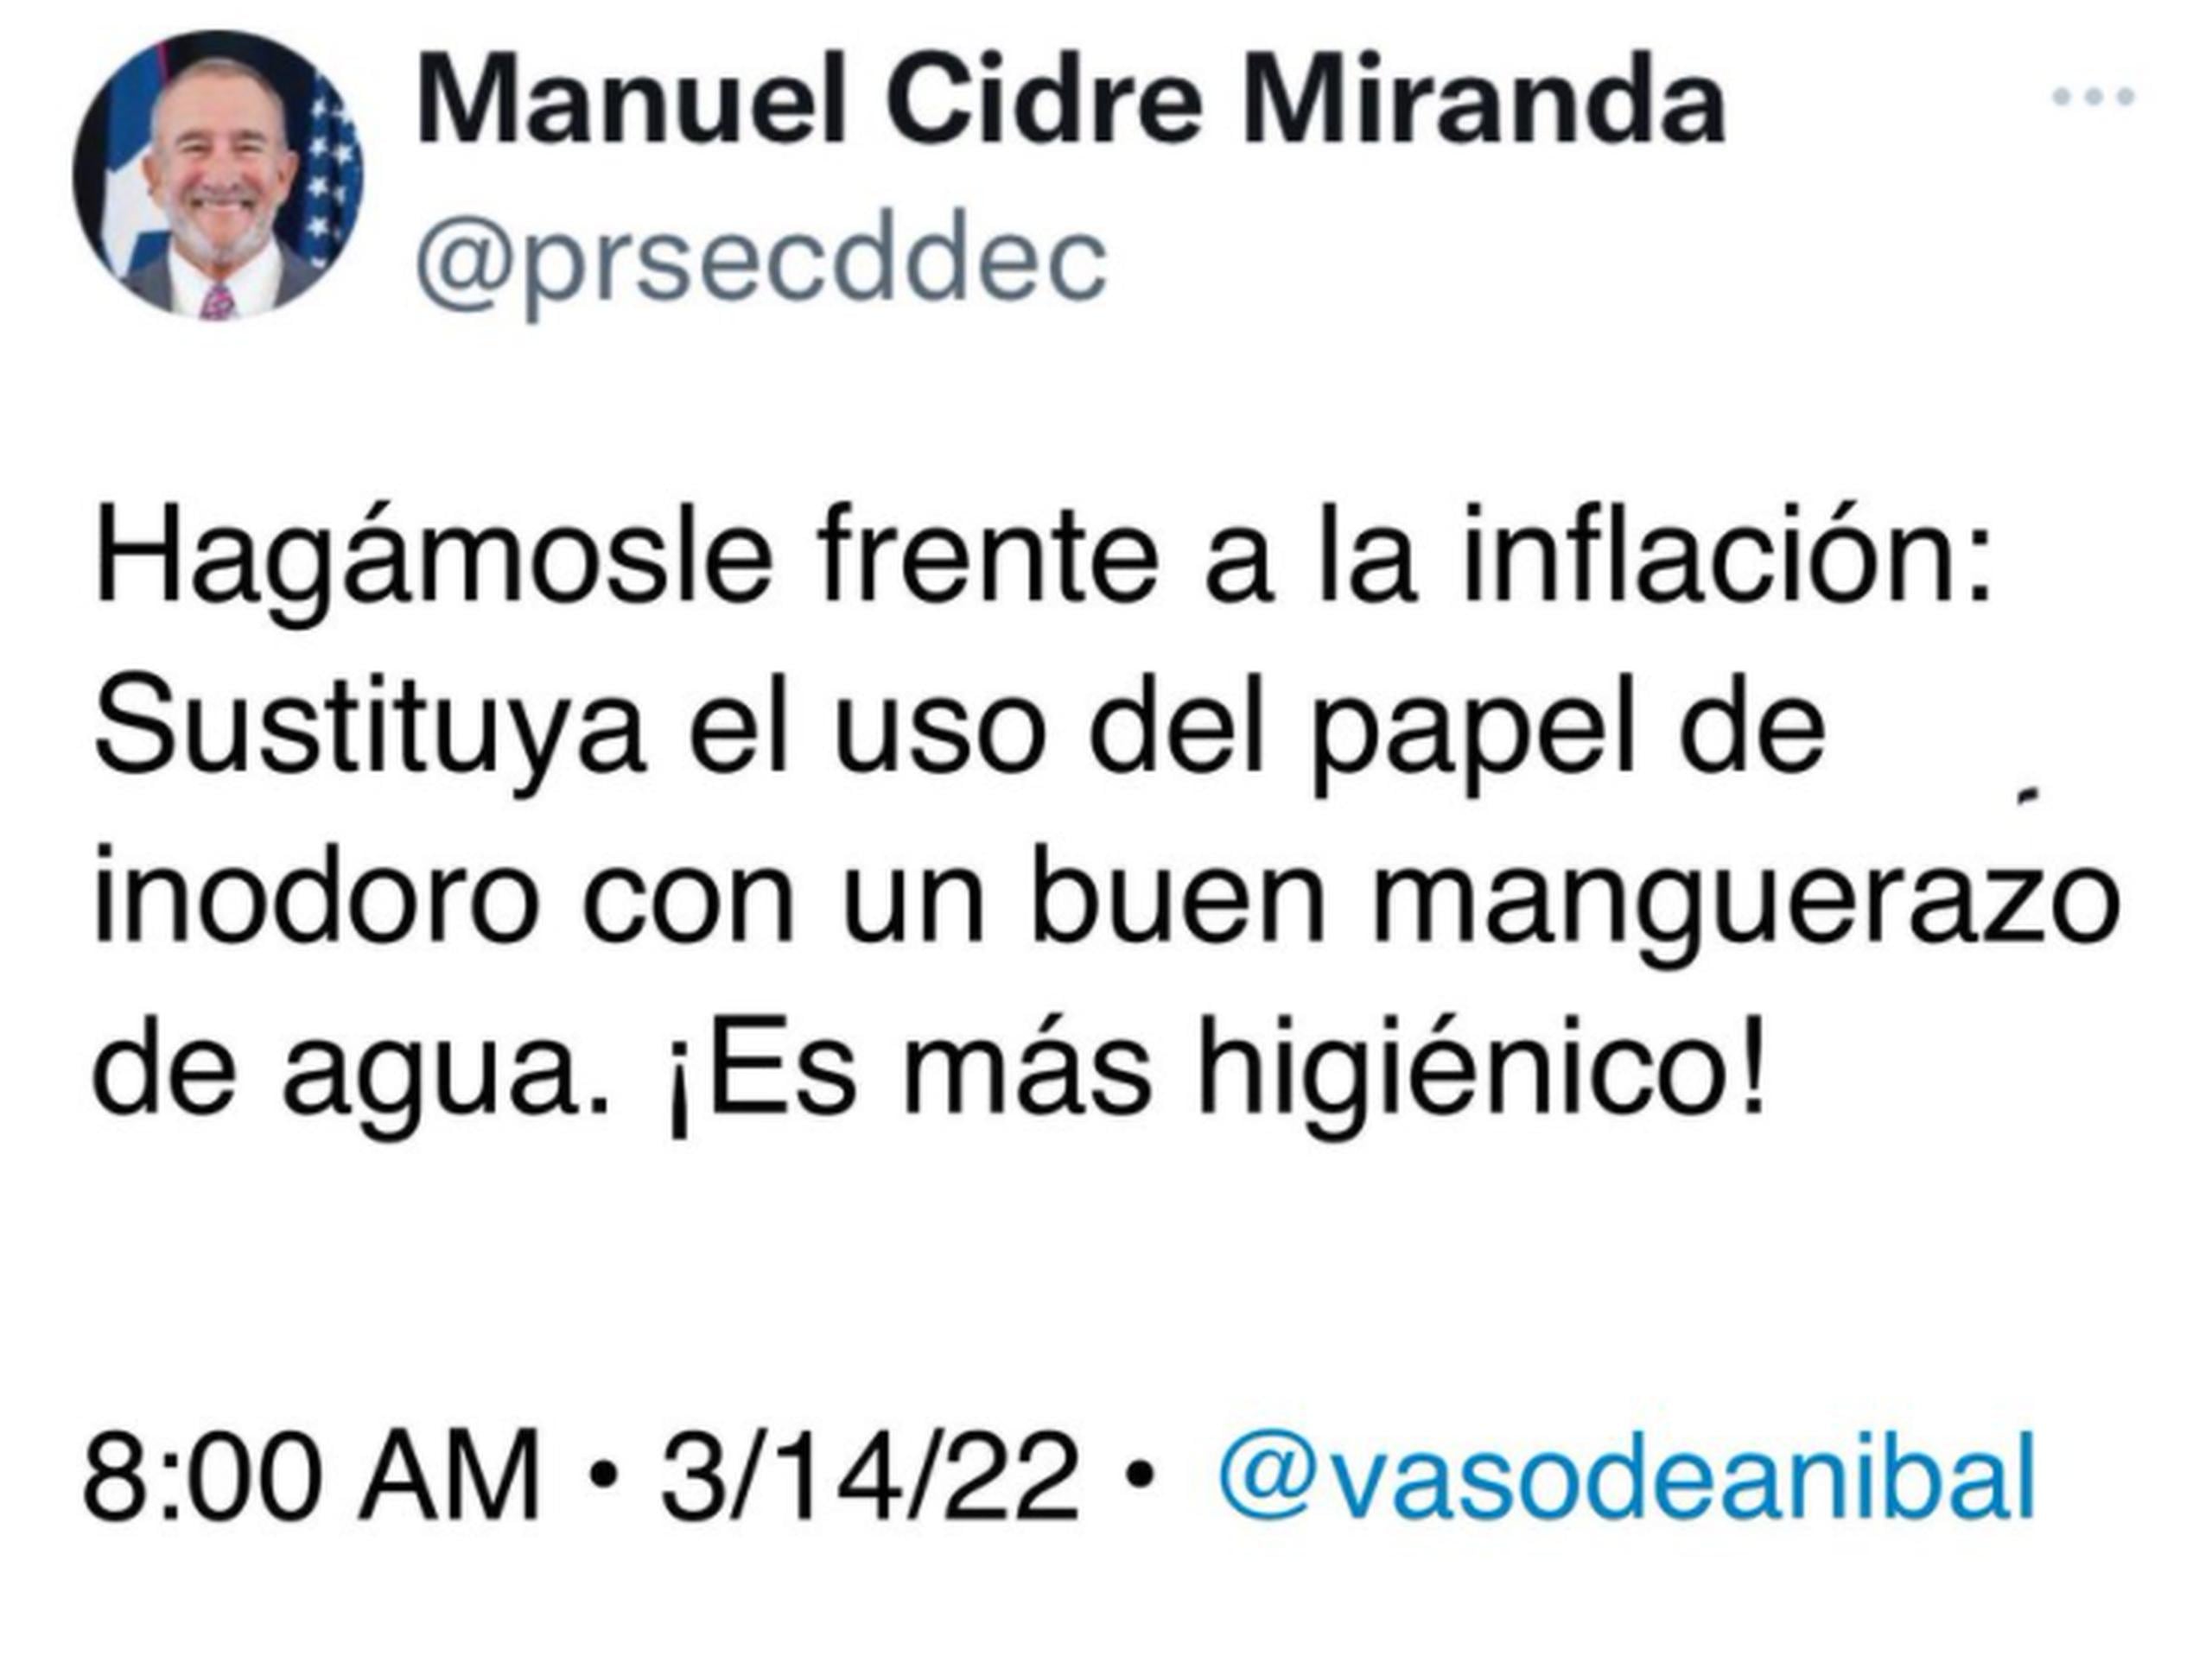 Uno de los tantos memes que se han creado falseando el tuit original de Manuel Cidre.